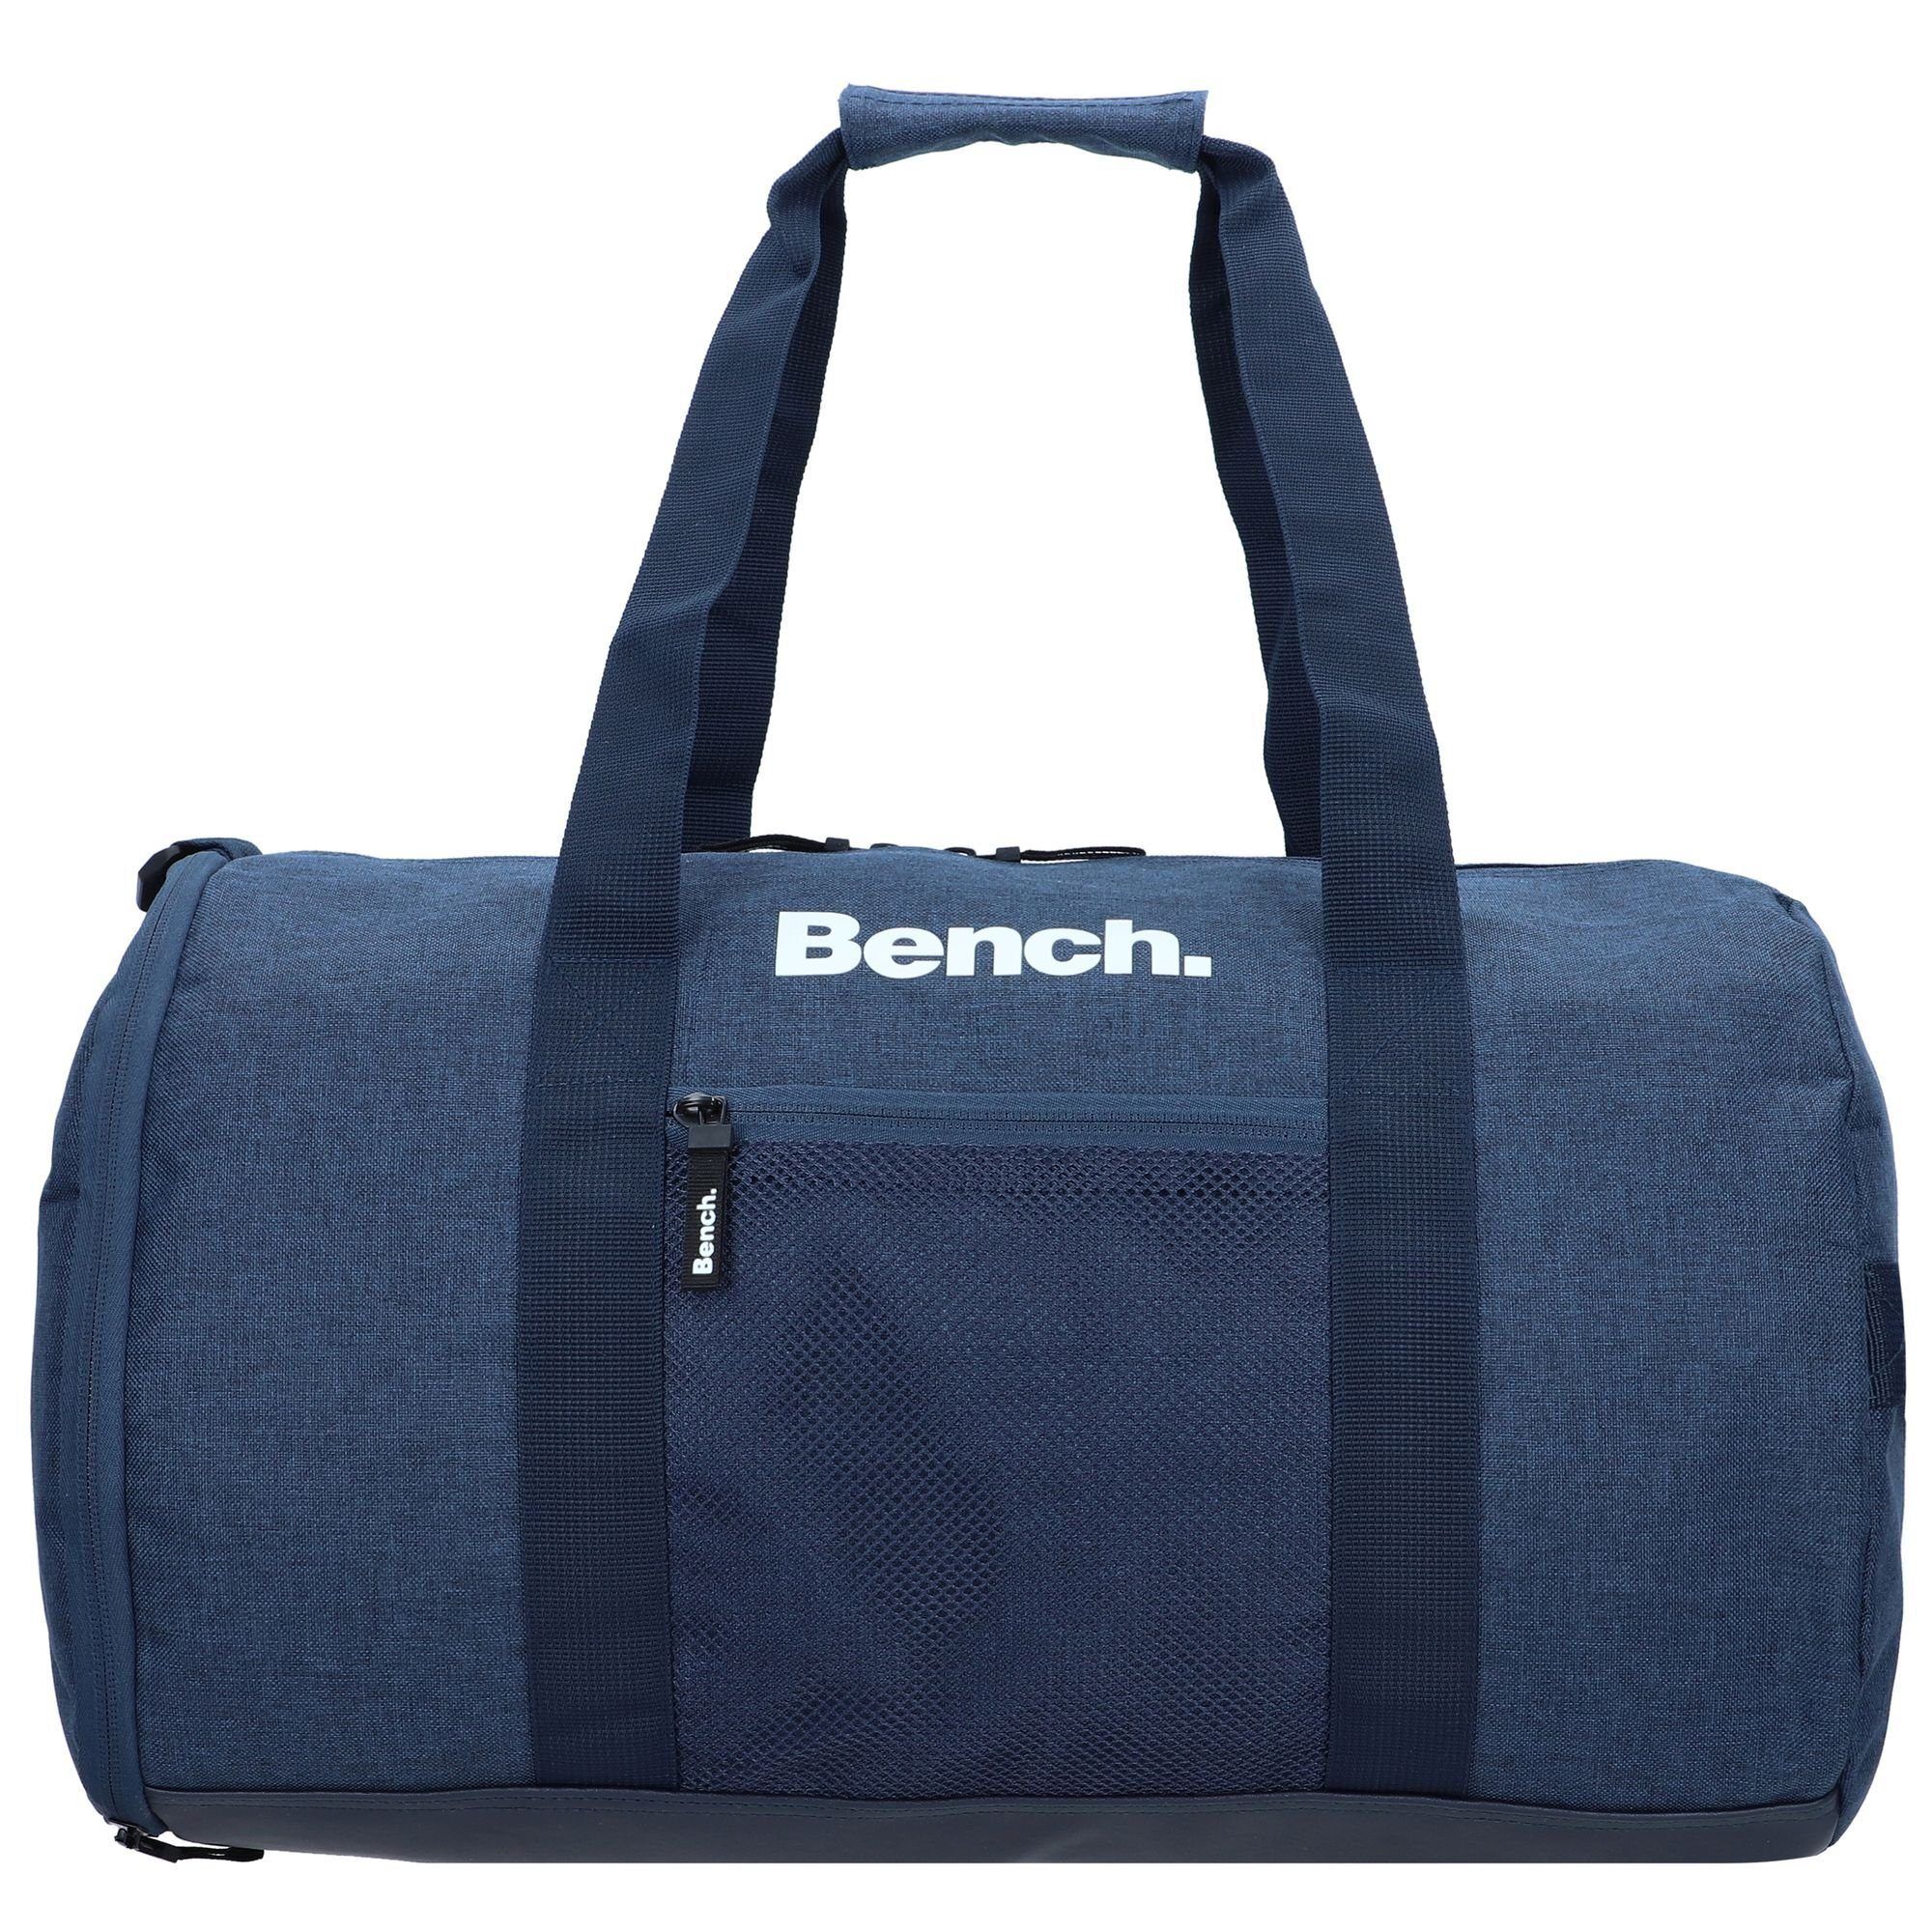 Bench. Weekender Classic, dunkelblau-weiß Polyester